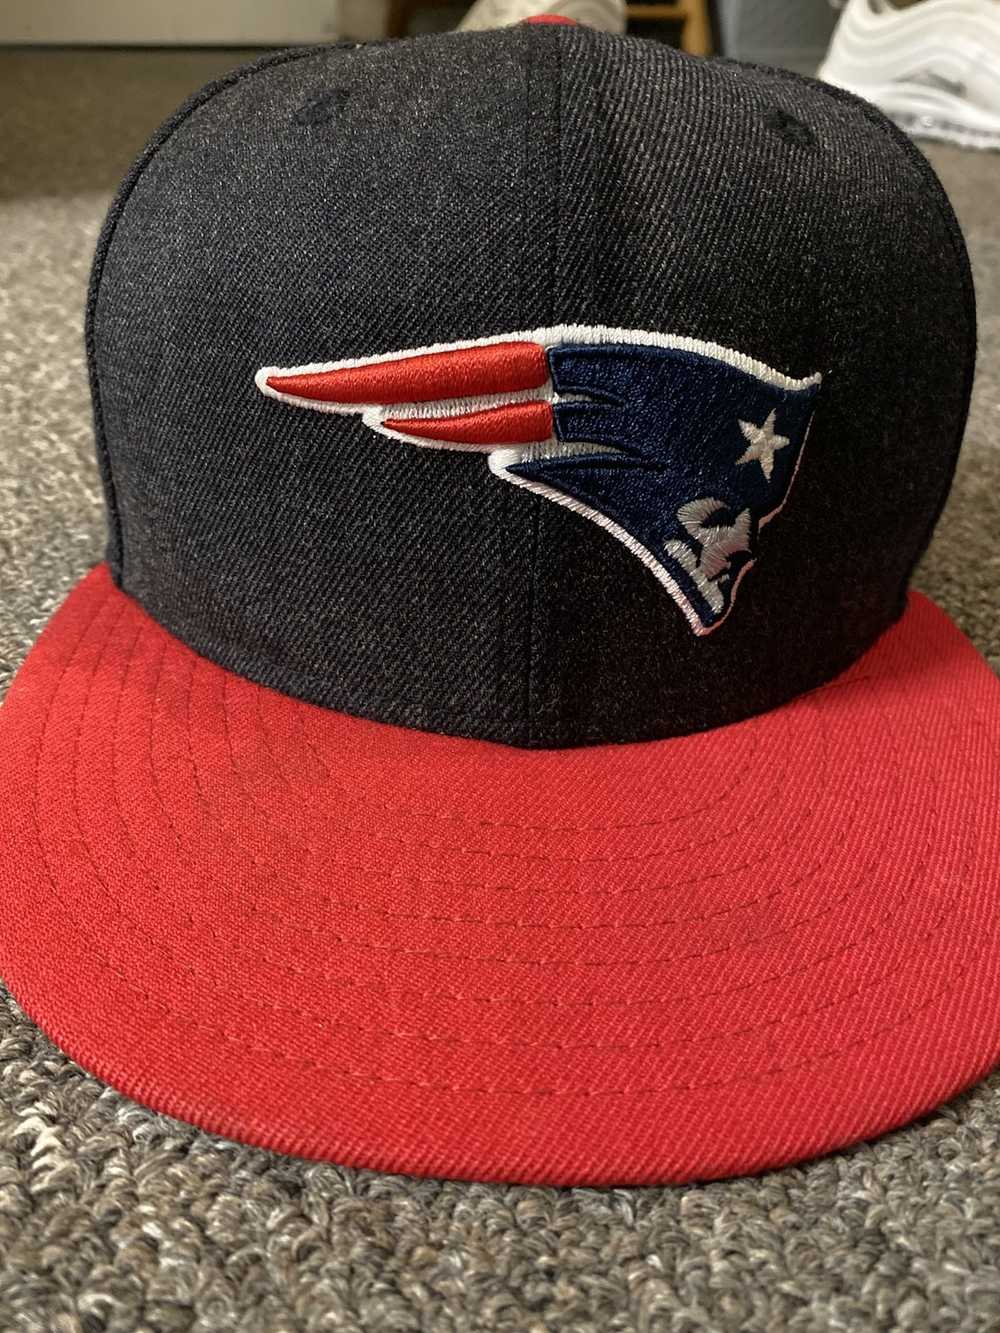 NFL Patriots hat - image 1